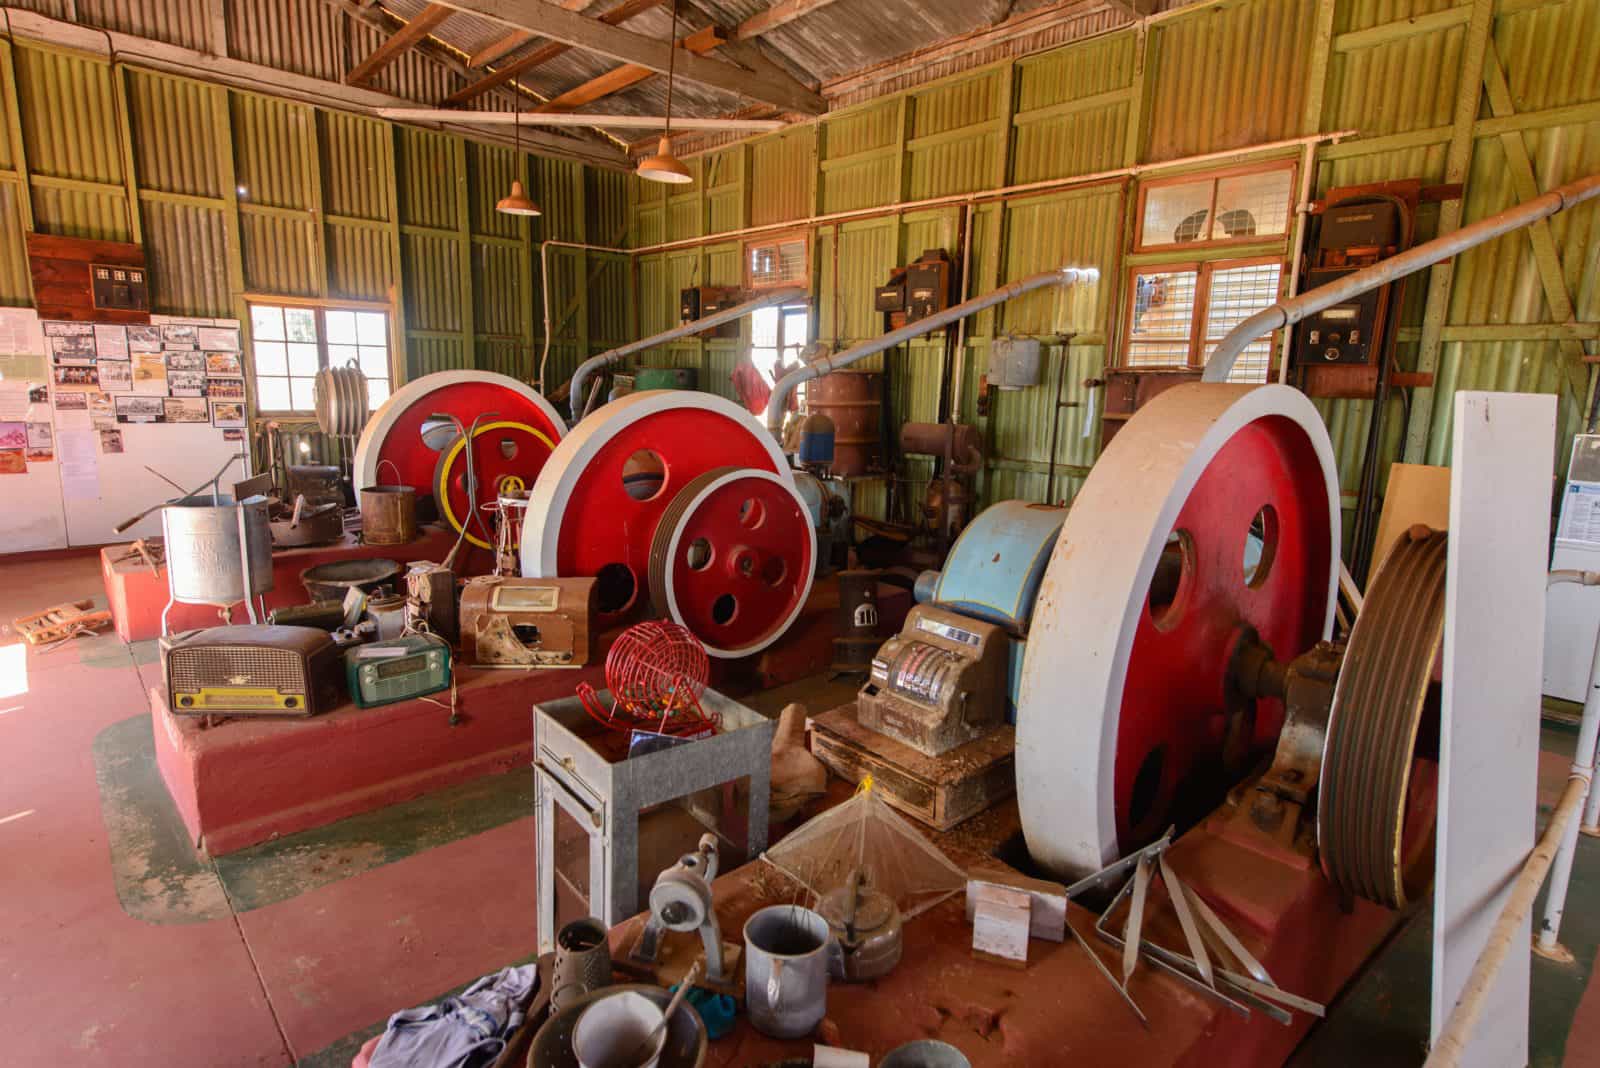 Wyandra Powerhouse Museum